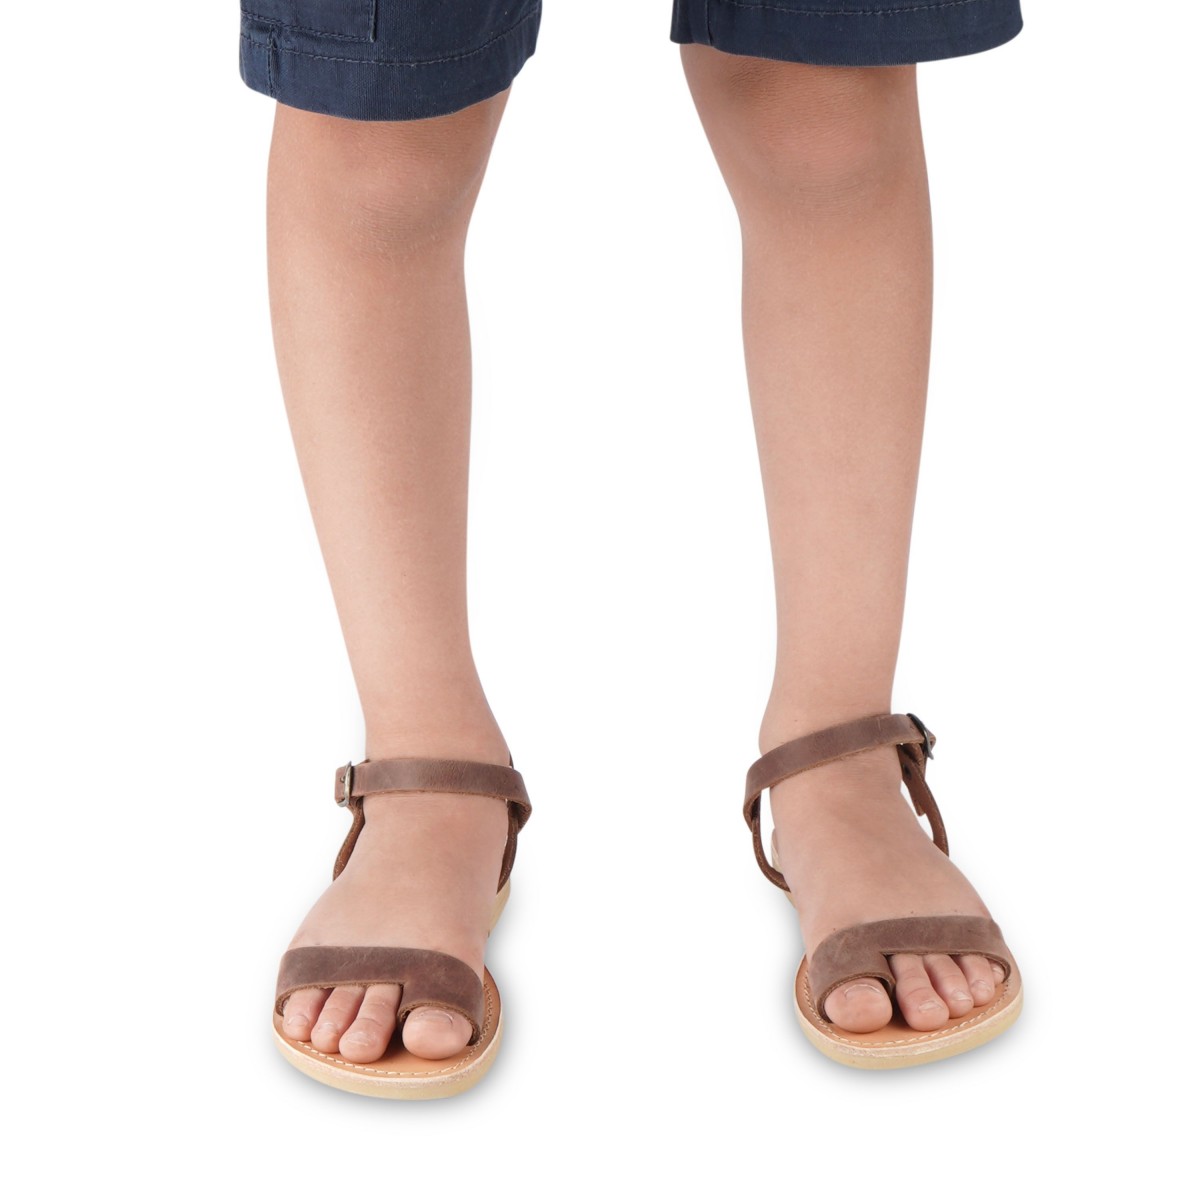 Attica sandals Sandalias para niño en piel nobuck marron oscuro con cierre de hebilla Zapatos Zapatos para niño Sandalias 